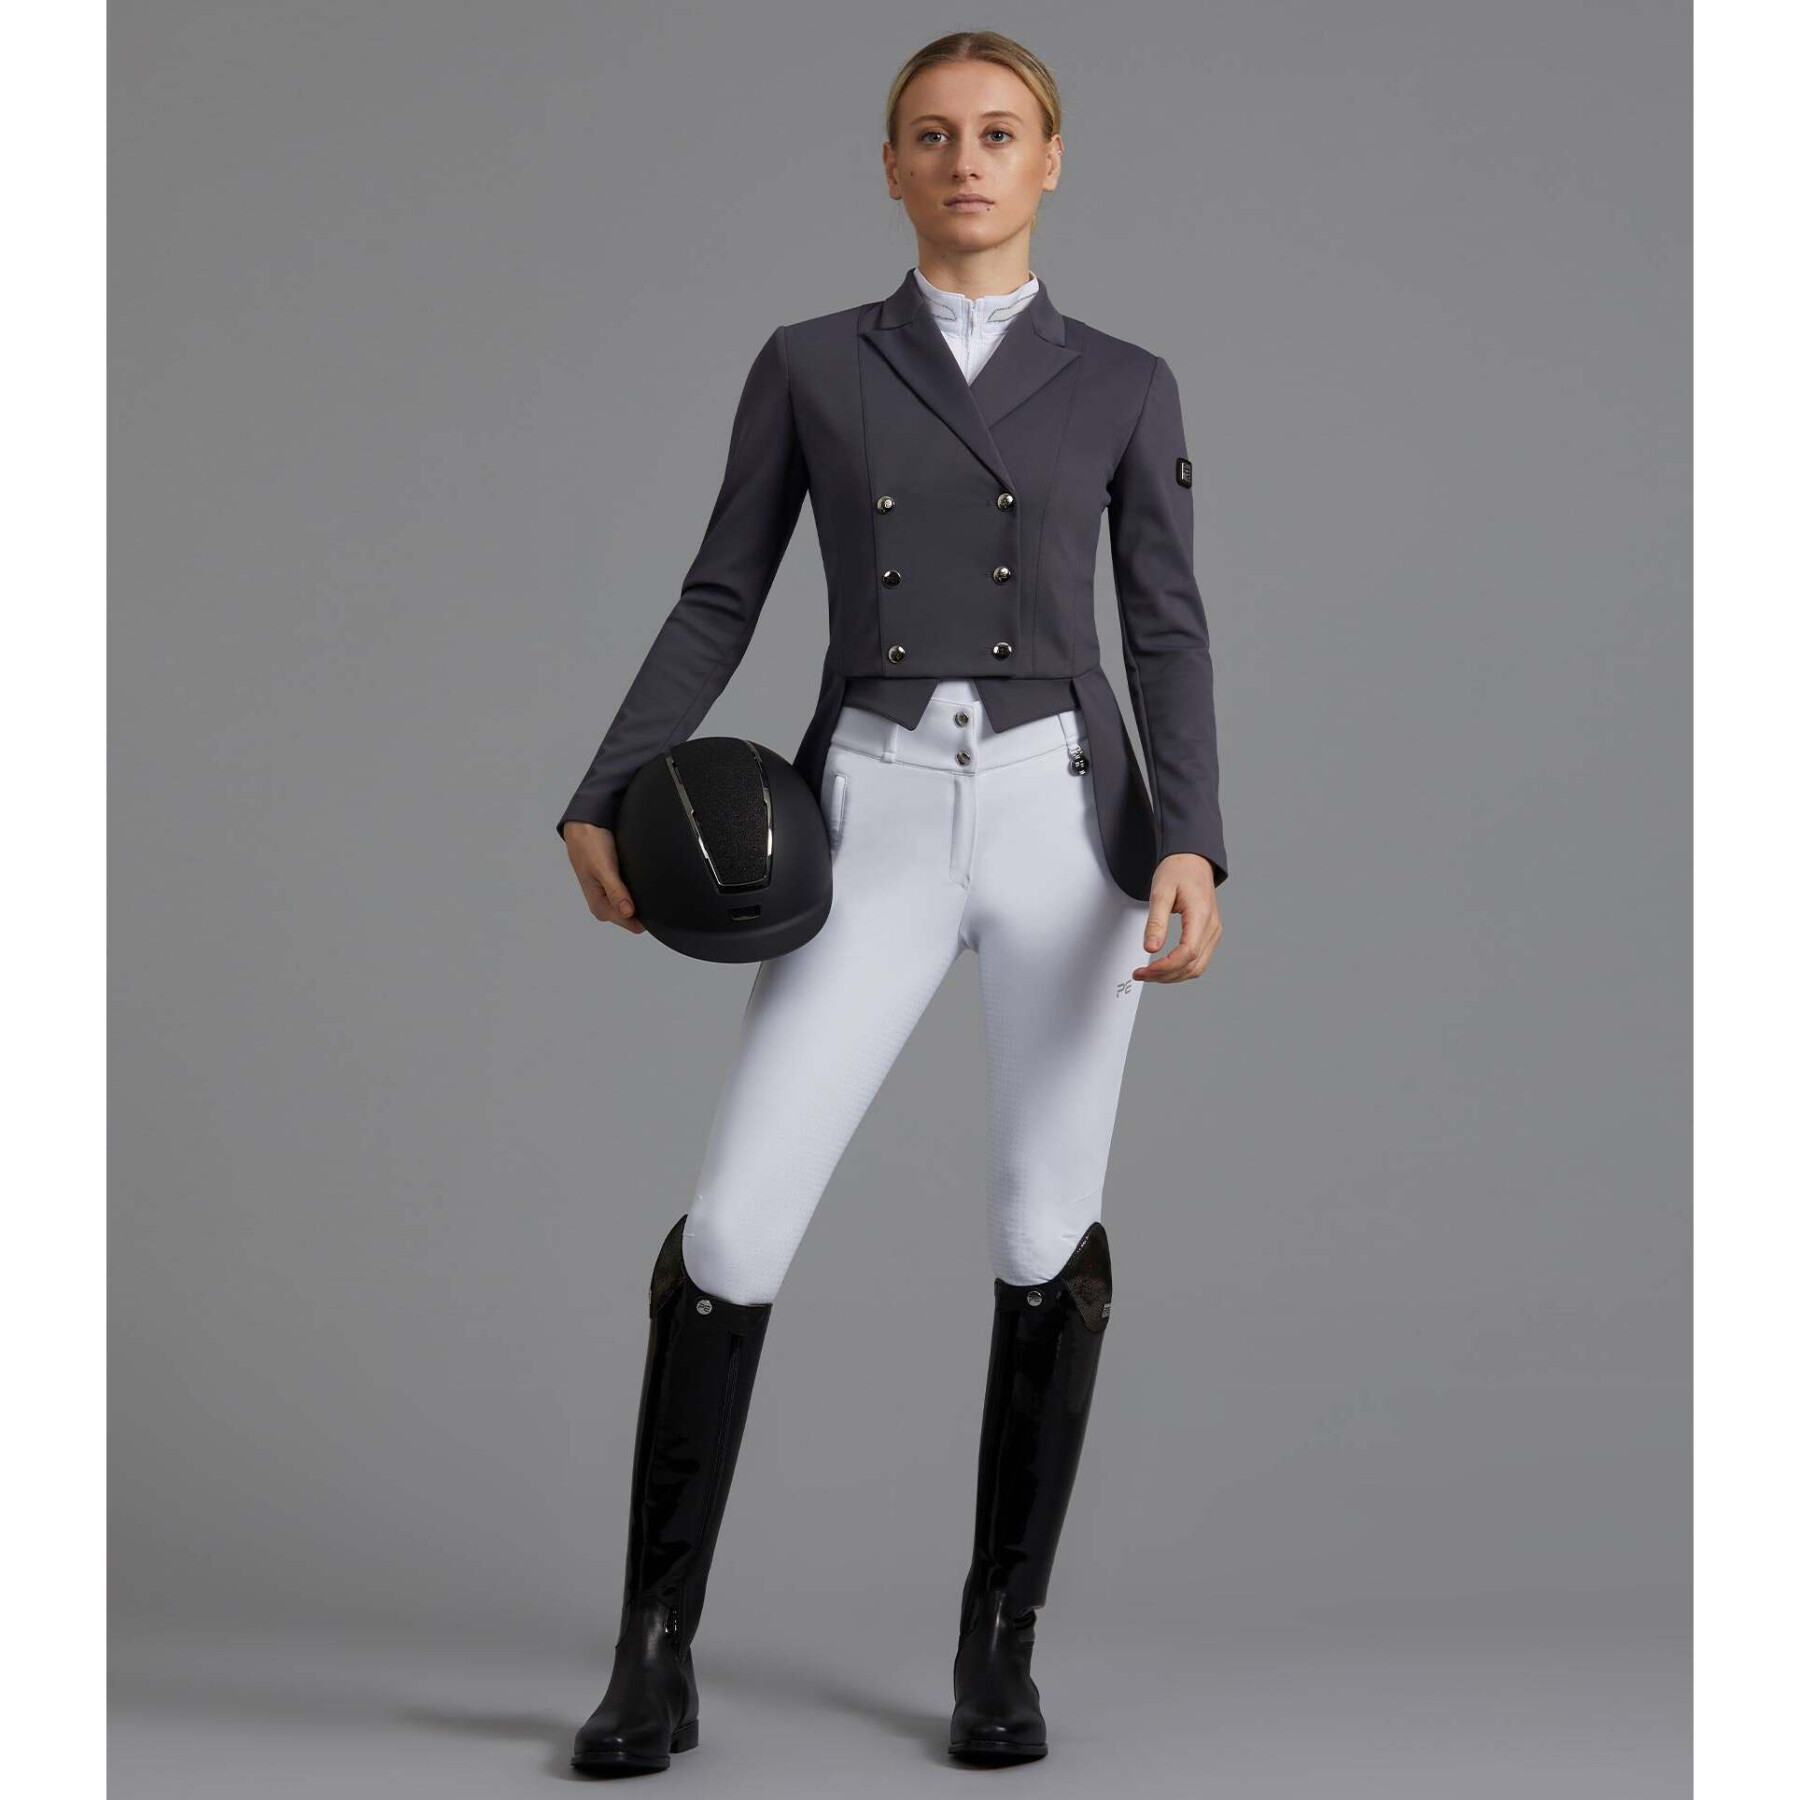 Veste de dressage équitation femme Premier Equine Capriole